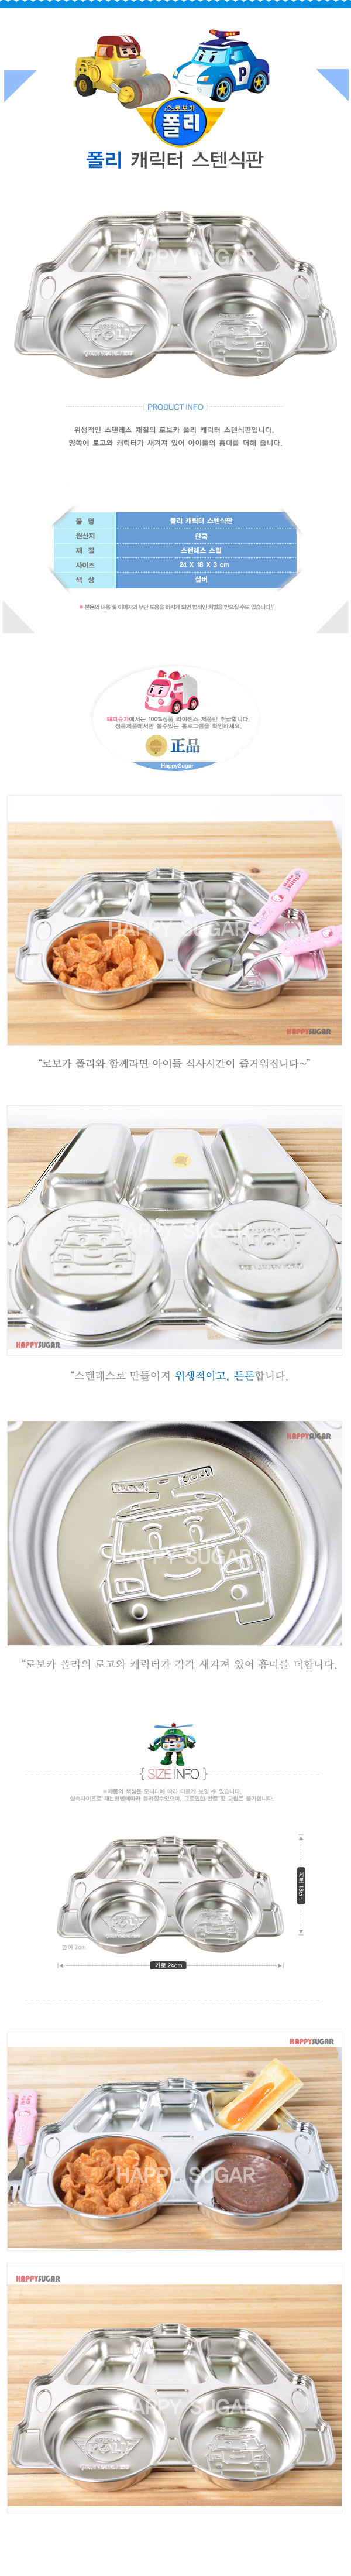 韓國製不鏽鋼餐盤【POLI 救援小英雄 】